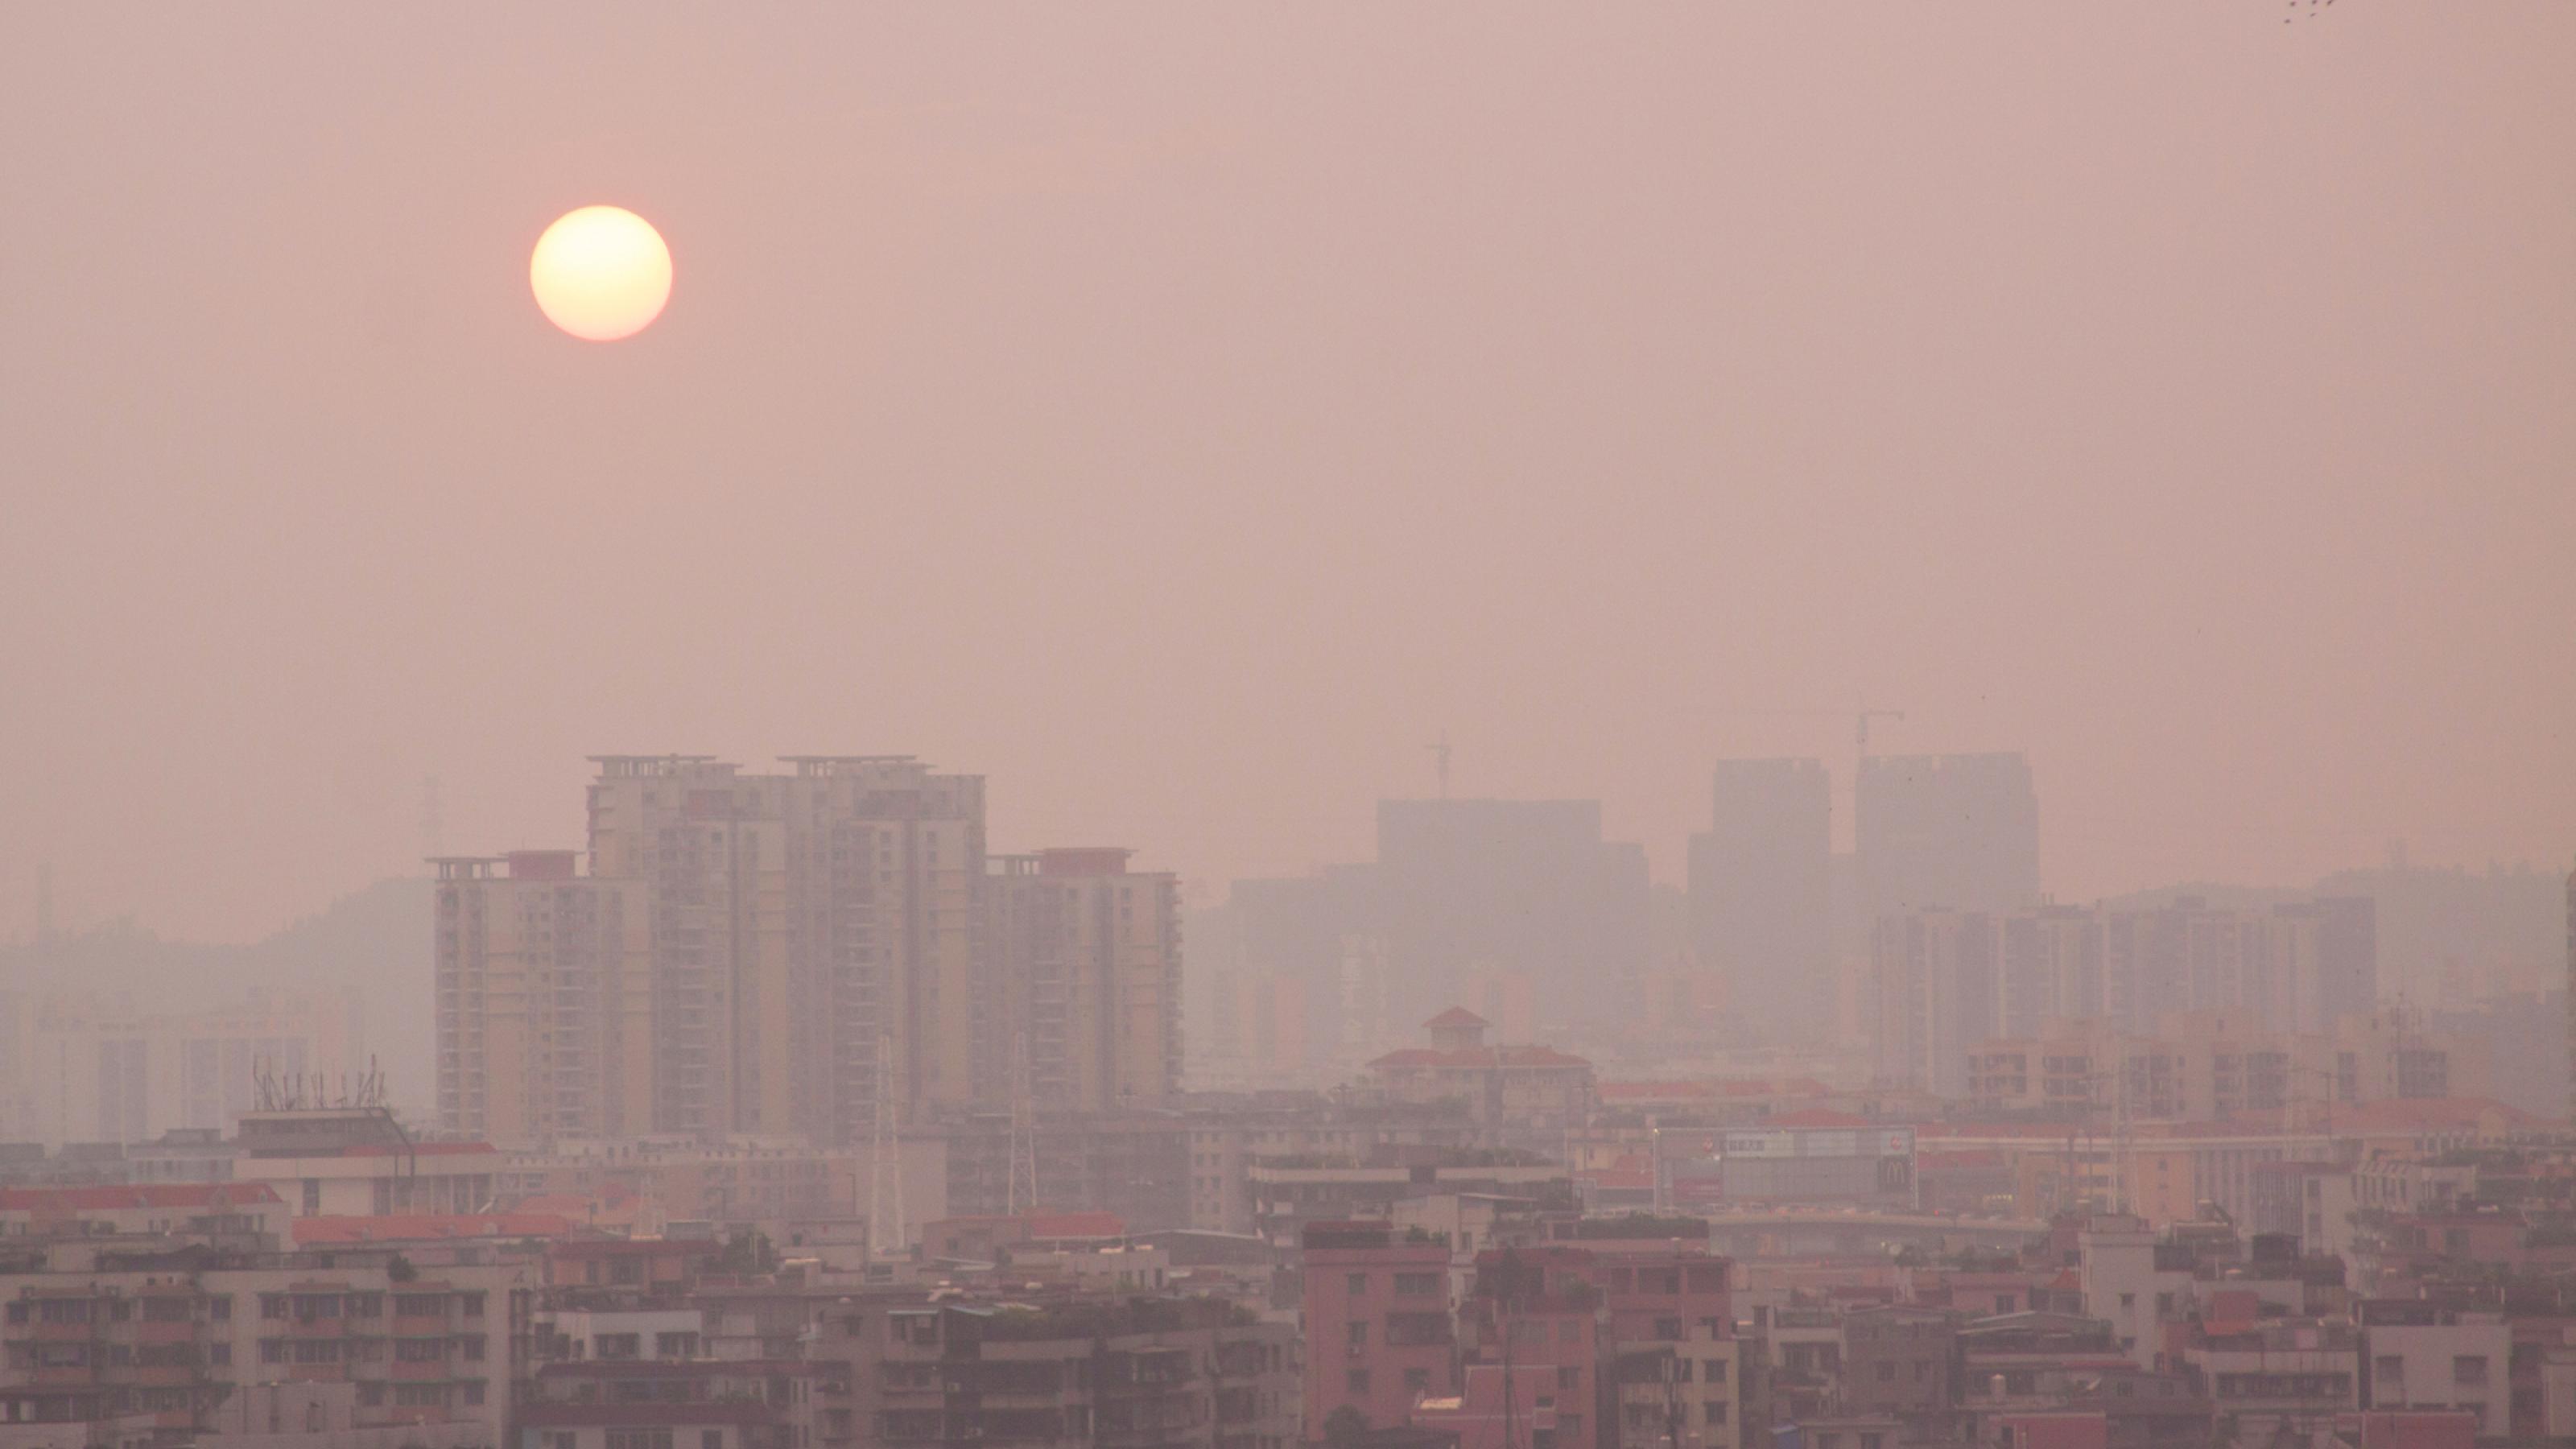 Das Bild zeigt die Silhouette der chinesischen Stadt Guangzhou mit Hochhäusern. Über der Stadt liegt eine Schicht an Smog, hinter der die Sonne nur blass zu sehen ist.